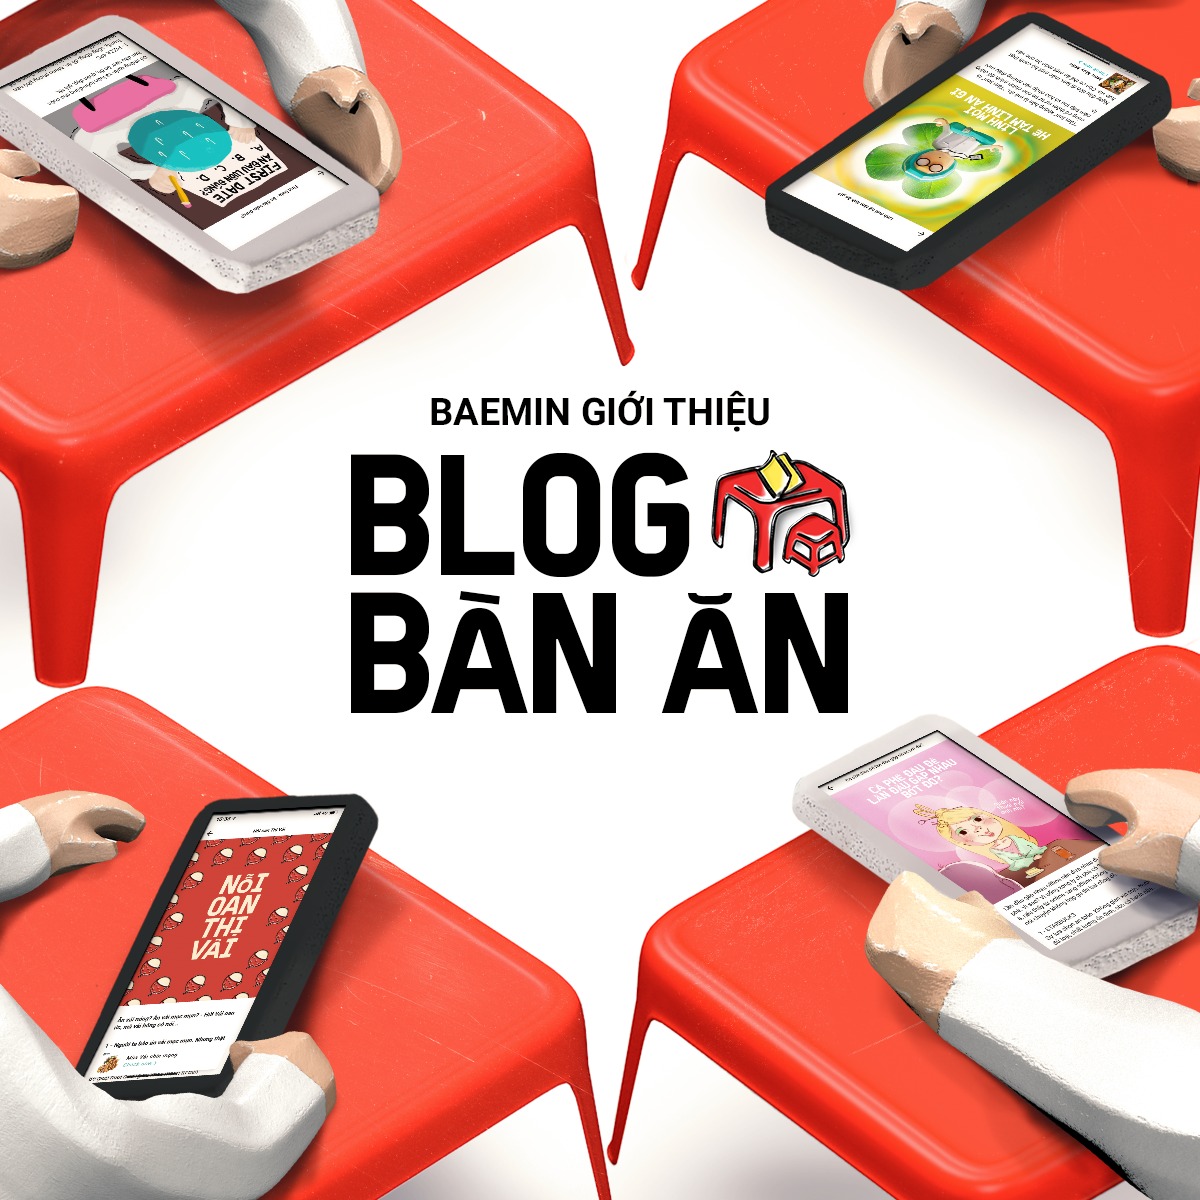 Tạp chí Bàn Ăn là một trong những sản phẩm đầu tiên trong chuỗi nội dung sáng tạo mà BAEMIN triển khai gần đây BAEMIN lọt top 5 các doanh nghiệp dẫn đầu thị trường cung cấp dịch vụ thương mại điện tử